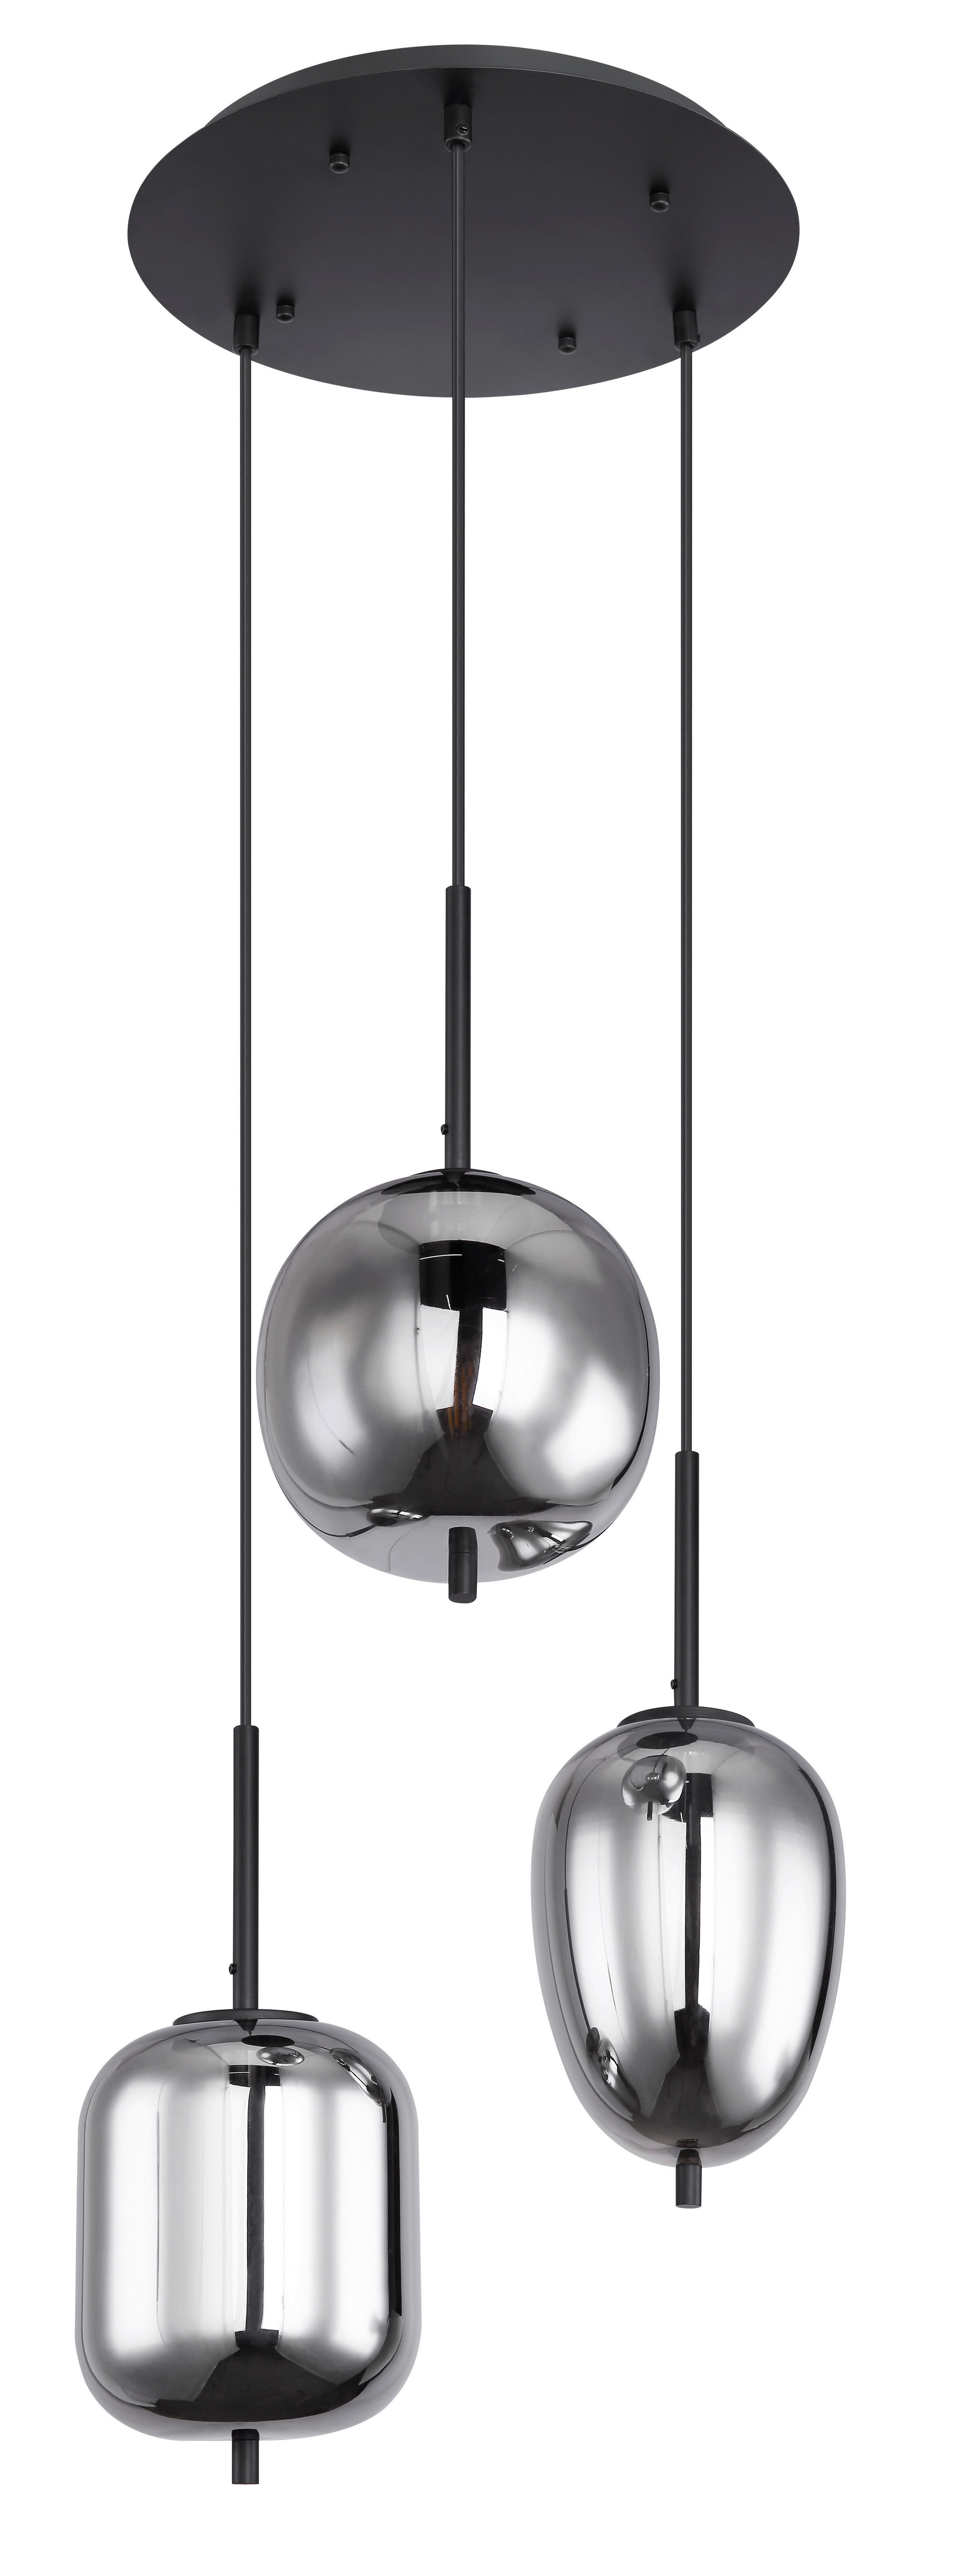 HÄNGELEUCHTE  - Schwarz/Grau, Design, Glas/Metall (46/120cm) - Globo